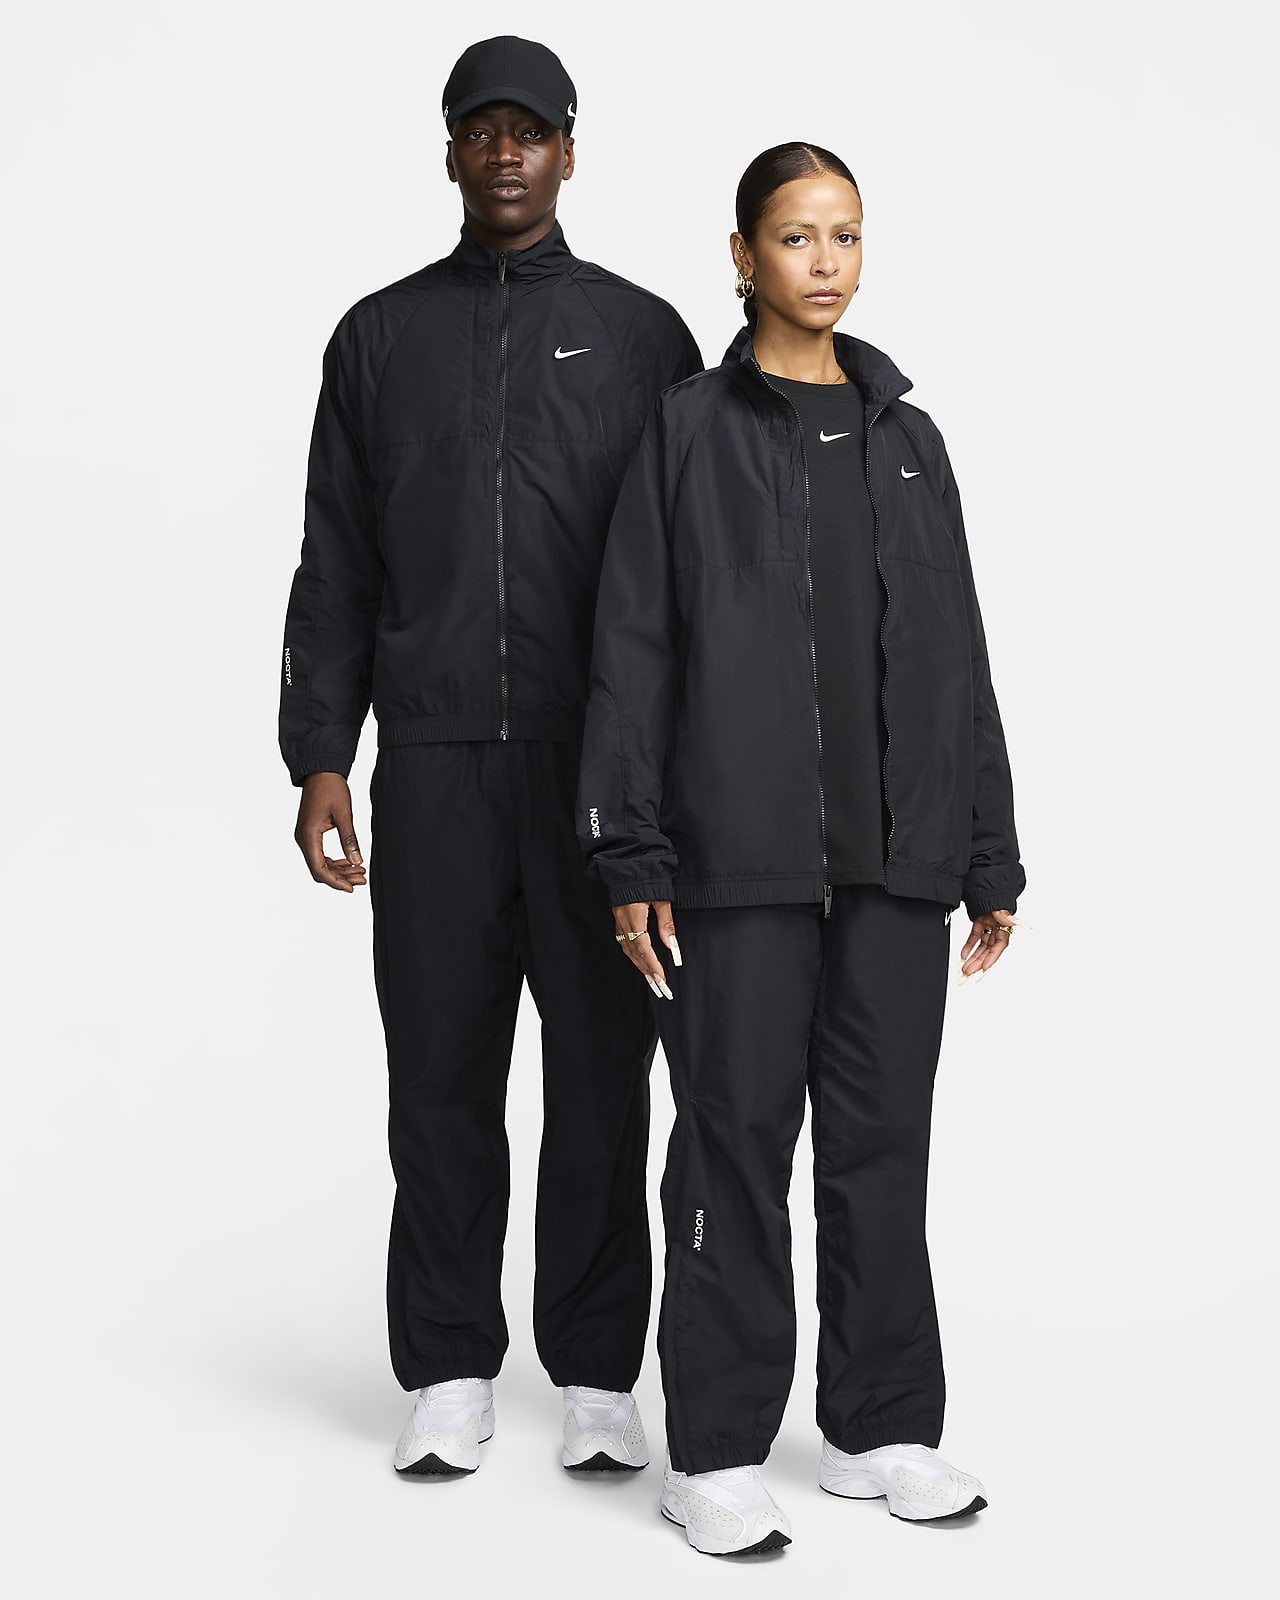 NOCTA Nylon Tracksuit Jacket. Nike ID